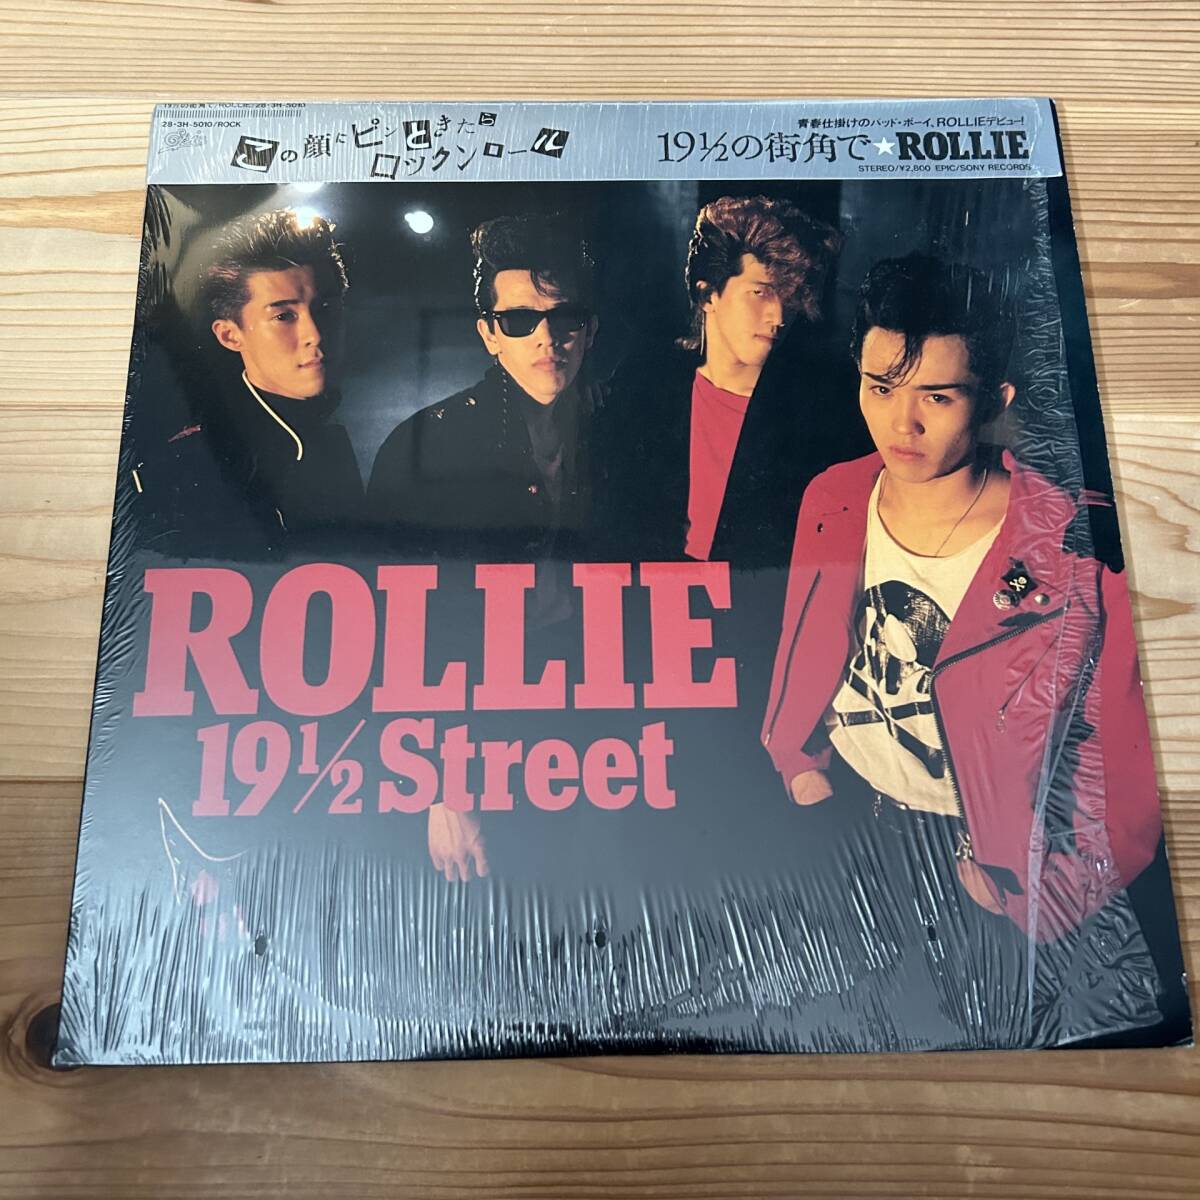 [レア盤] ROLLIE, ローリー, 19 1/2 Street, 19 1/2 の街角で, Epic 28・3H-5010, 1stアルバム, LP, レコード, THE COLTS, ザ・コルツの画像3